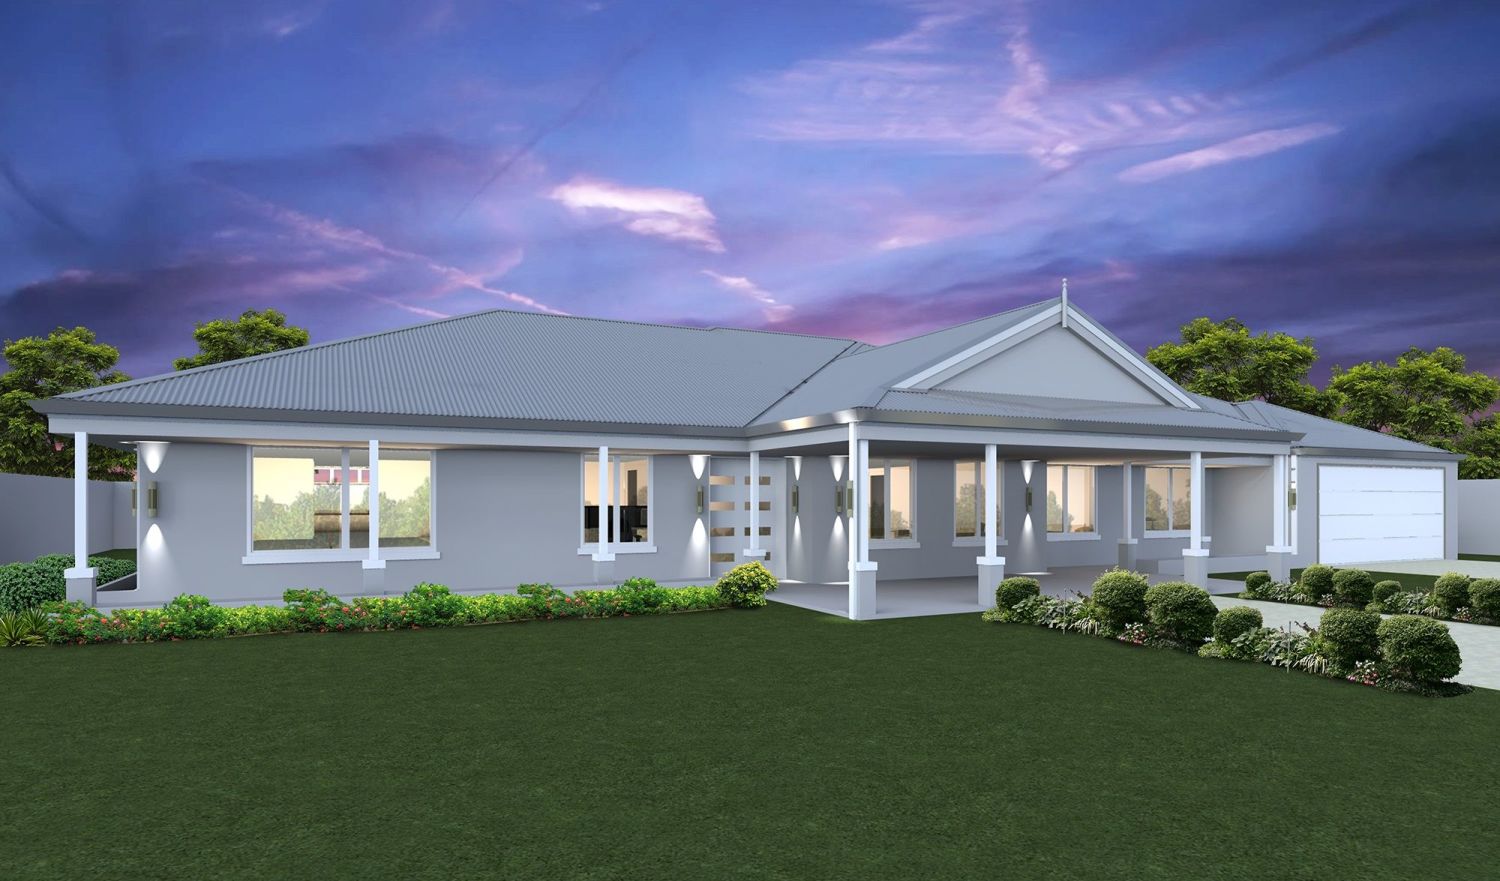 Home Designs Online Australia | Buy Rural Home Designs In VIC | Buy